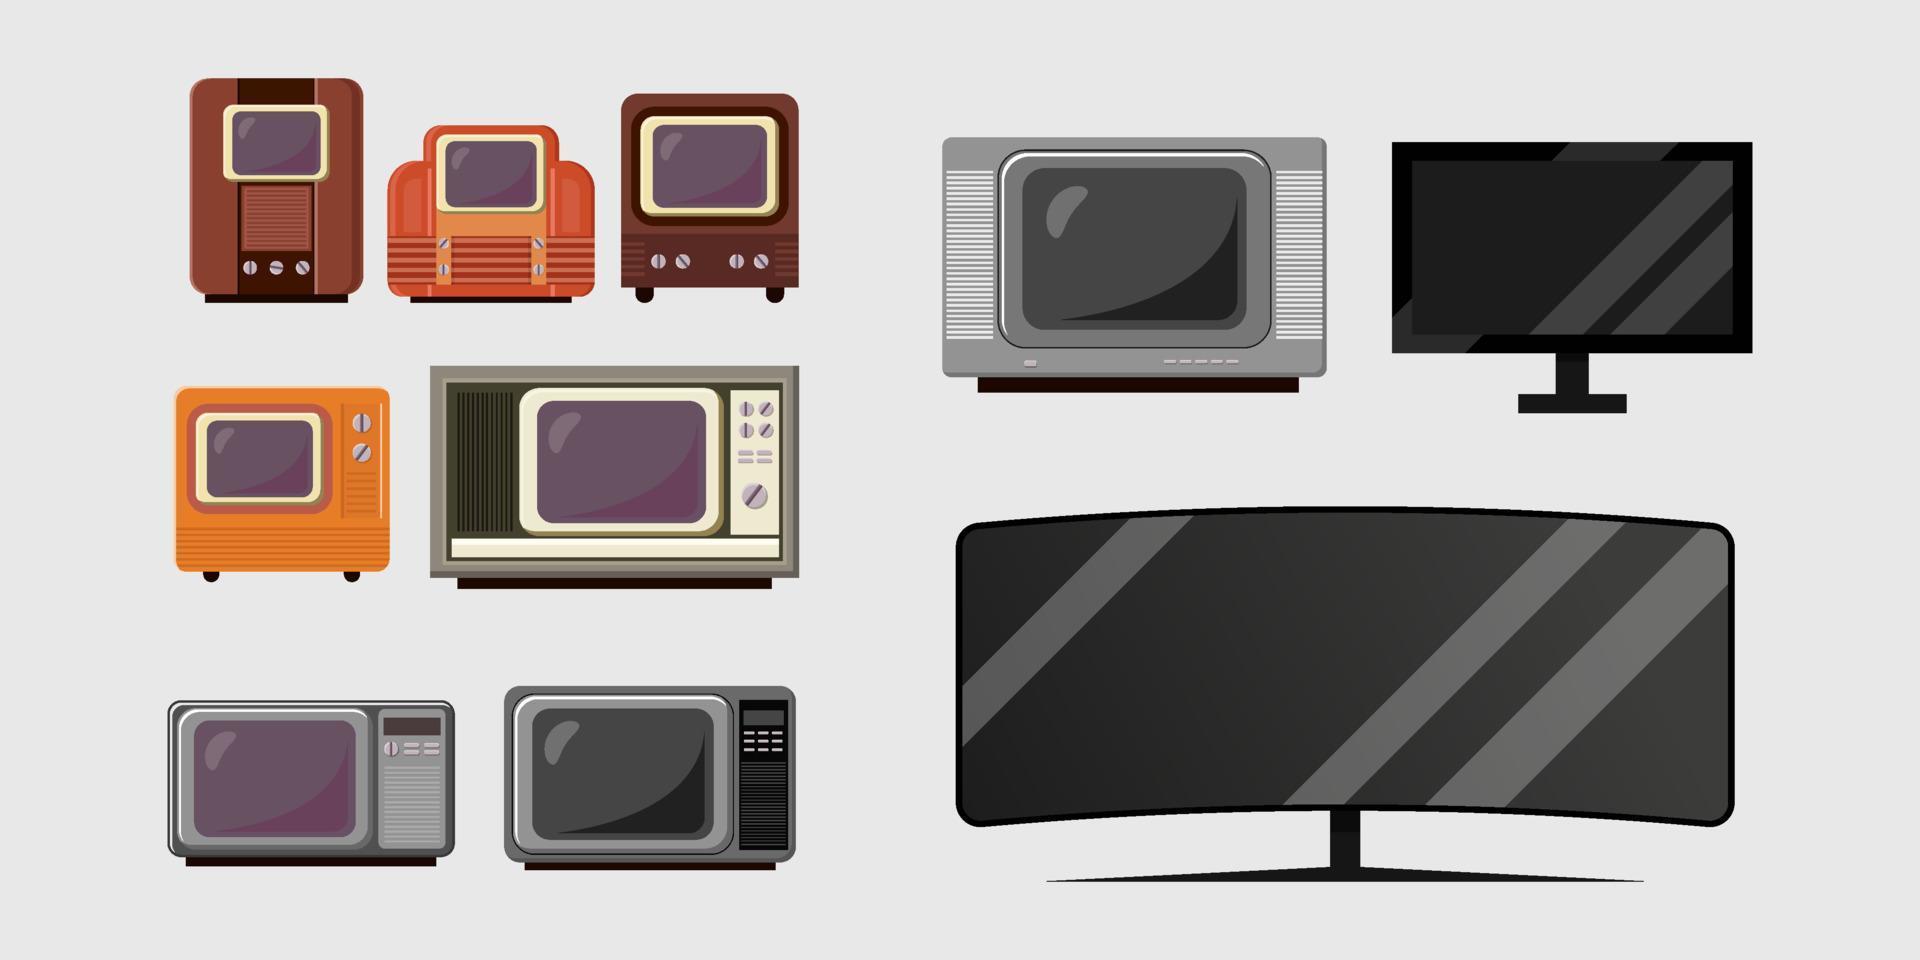 establecer la ilustración de la evolución de la televisión de años en años vector